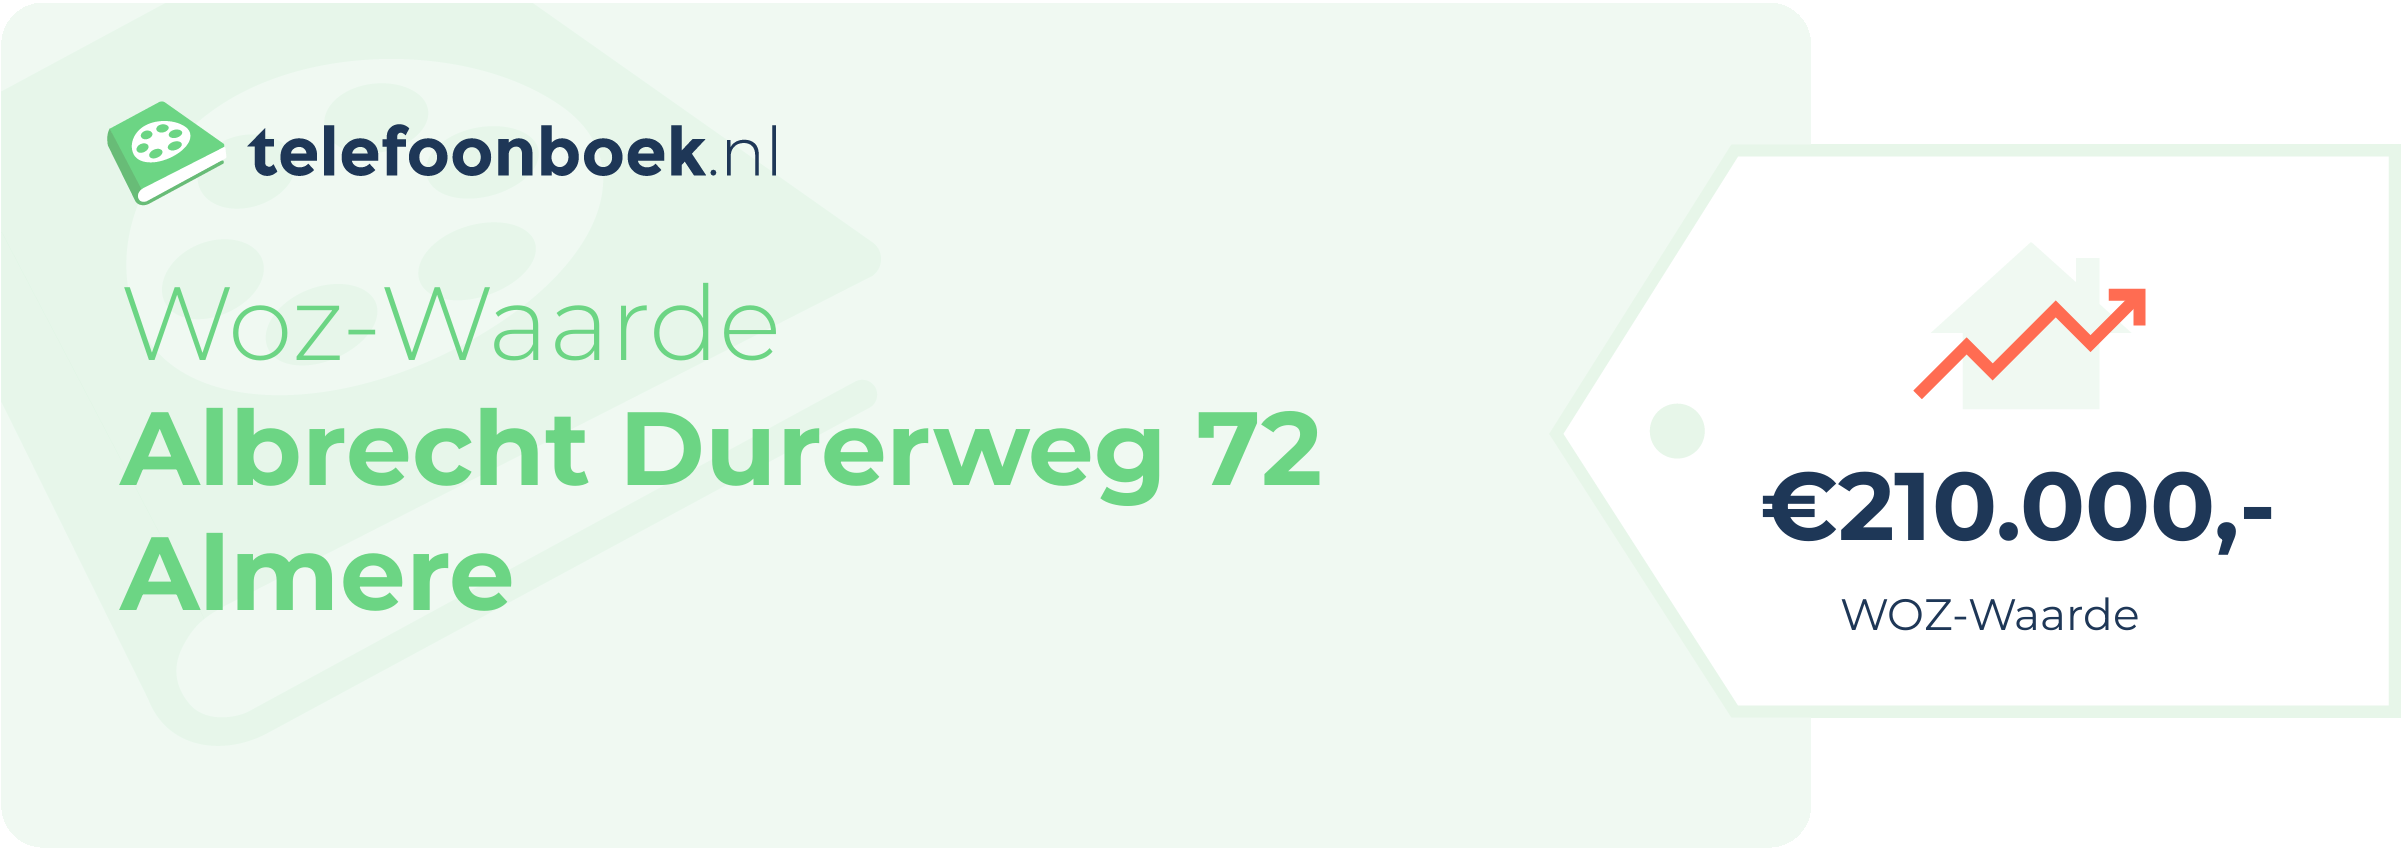 WOZ-waarde Albrecht Durerweg 72 Almere